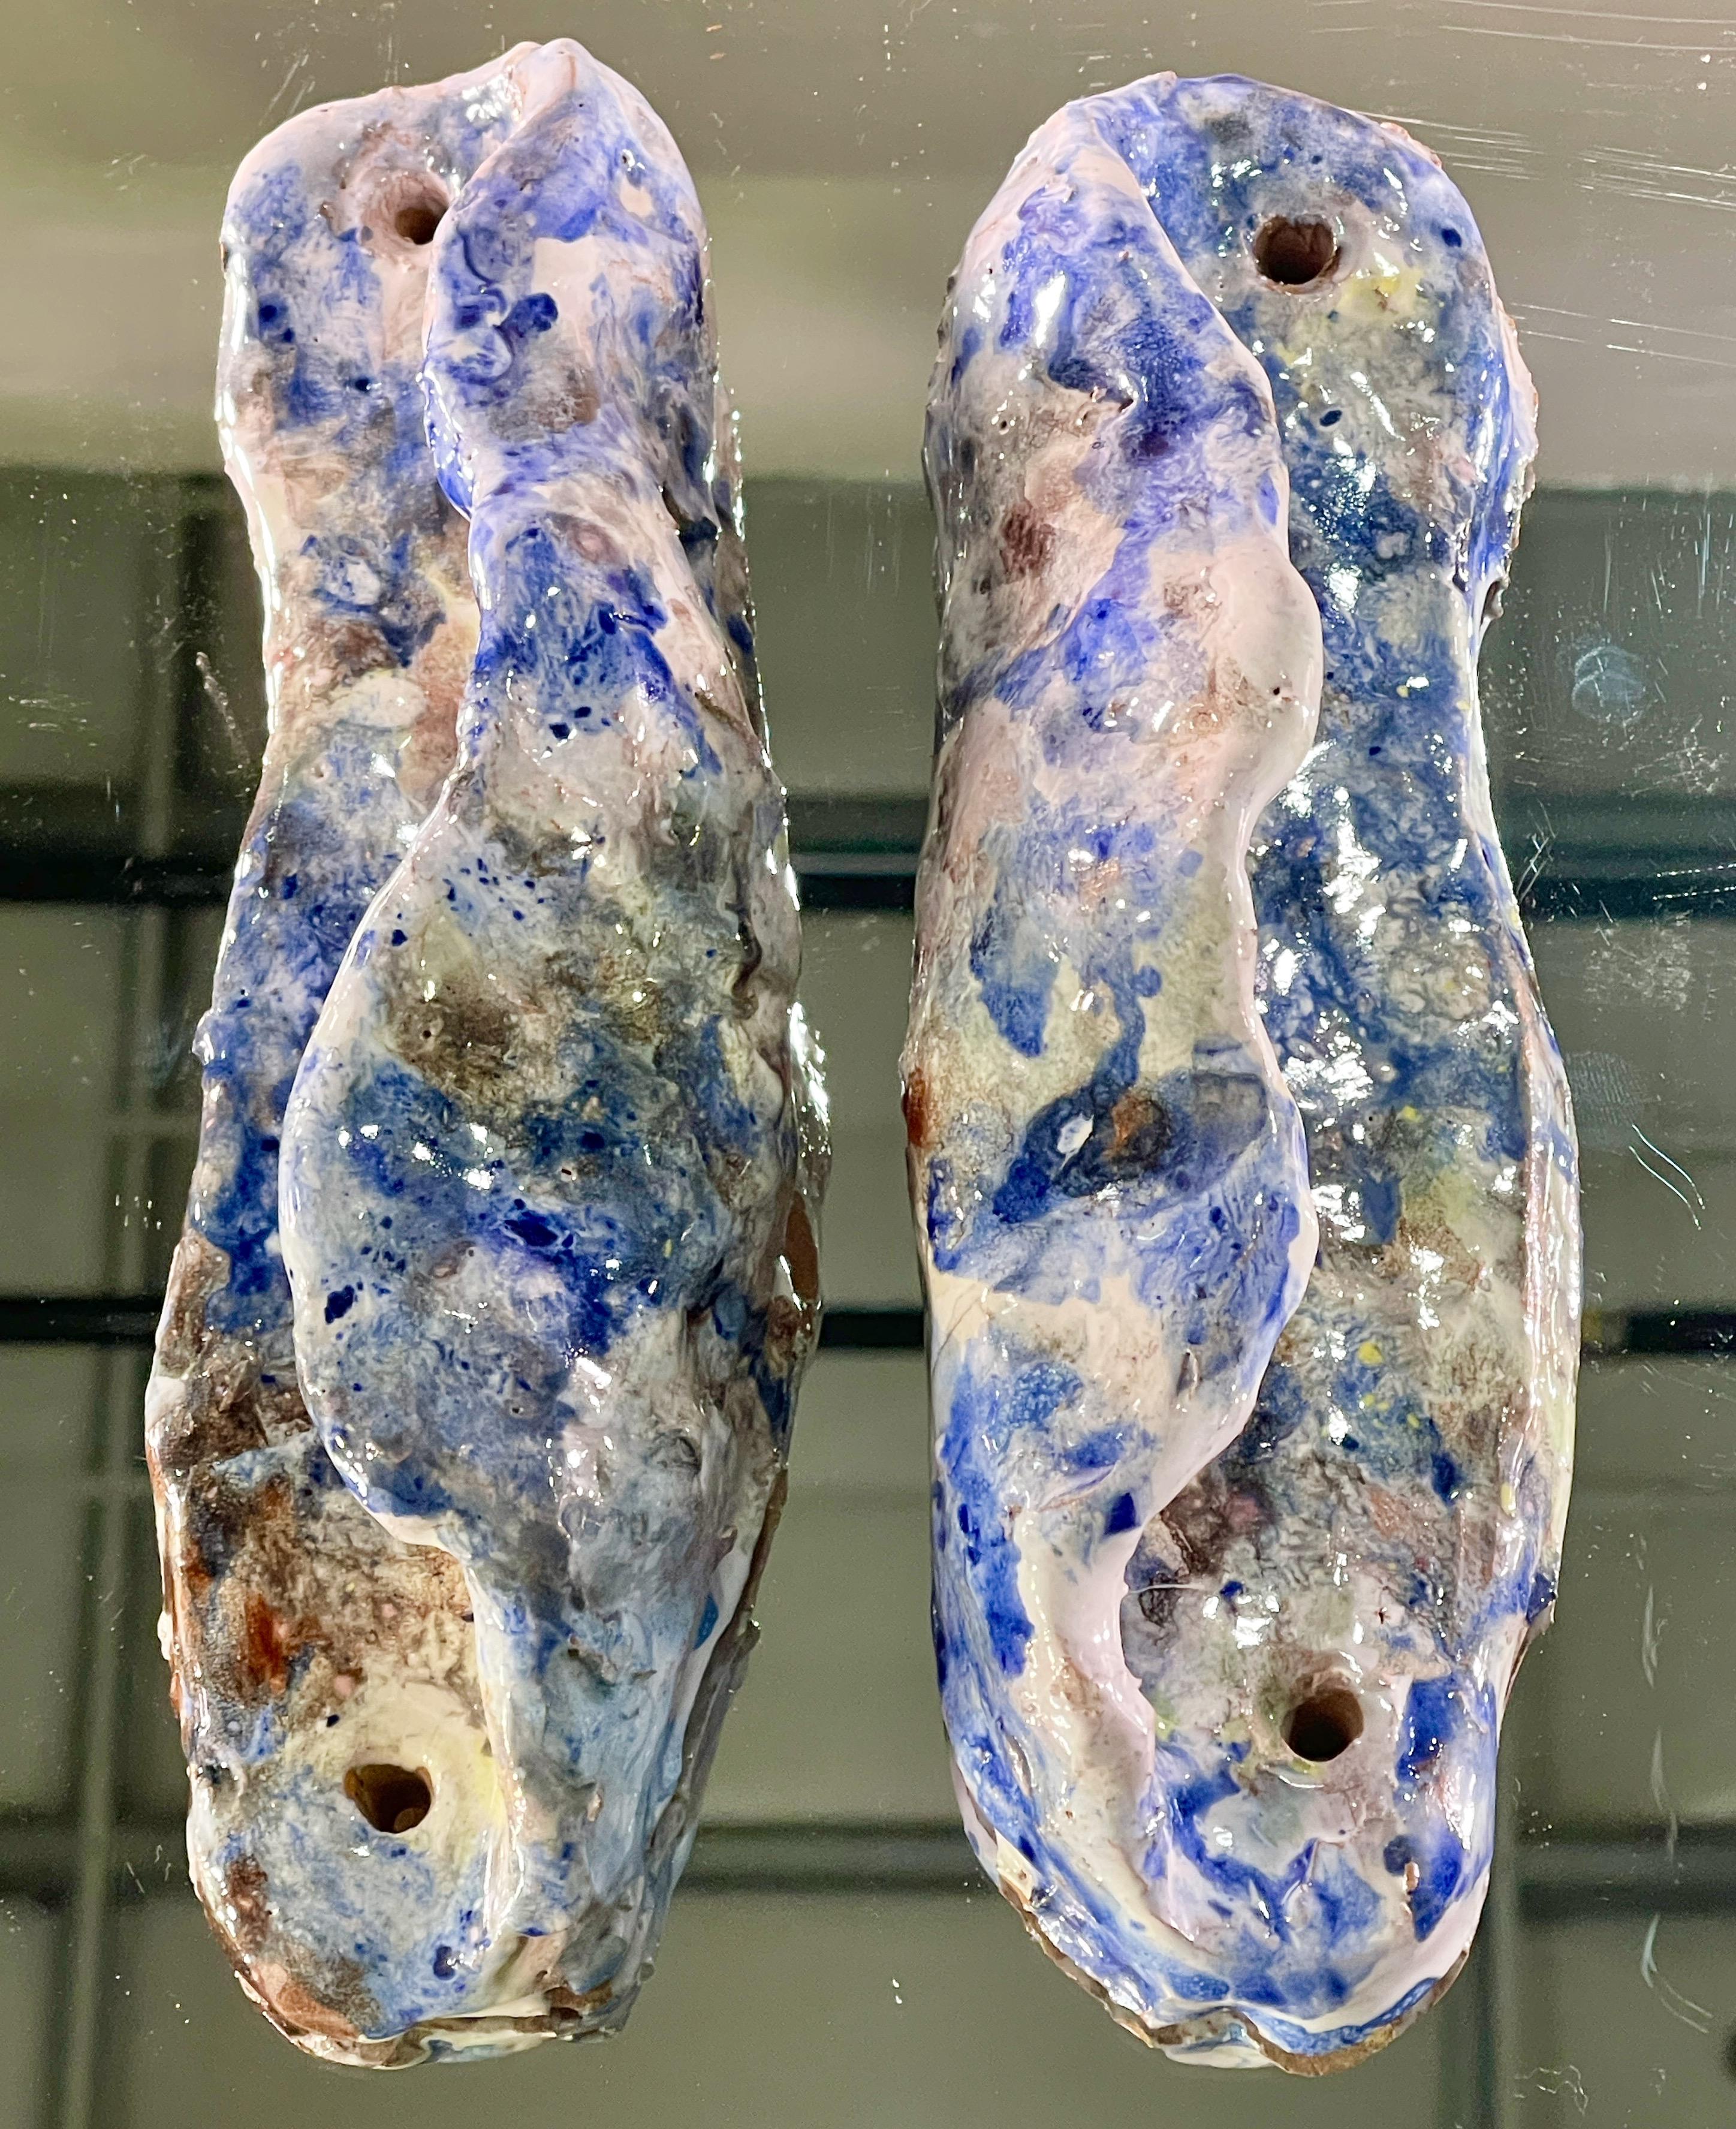 Ein Paar blau-weiß glasierte Keramik-Türgriffe, die Fausto Melotti (1901-1986) zugeschrieben werden. Siehe seine Maniglie für Casa Fornaroli.
Unterschrift nicht entzifferbar.
Jeweils mit zwei Schraublöchern. Siehe Detailfotos für Abstände.
Ceramica